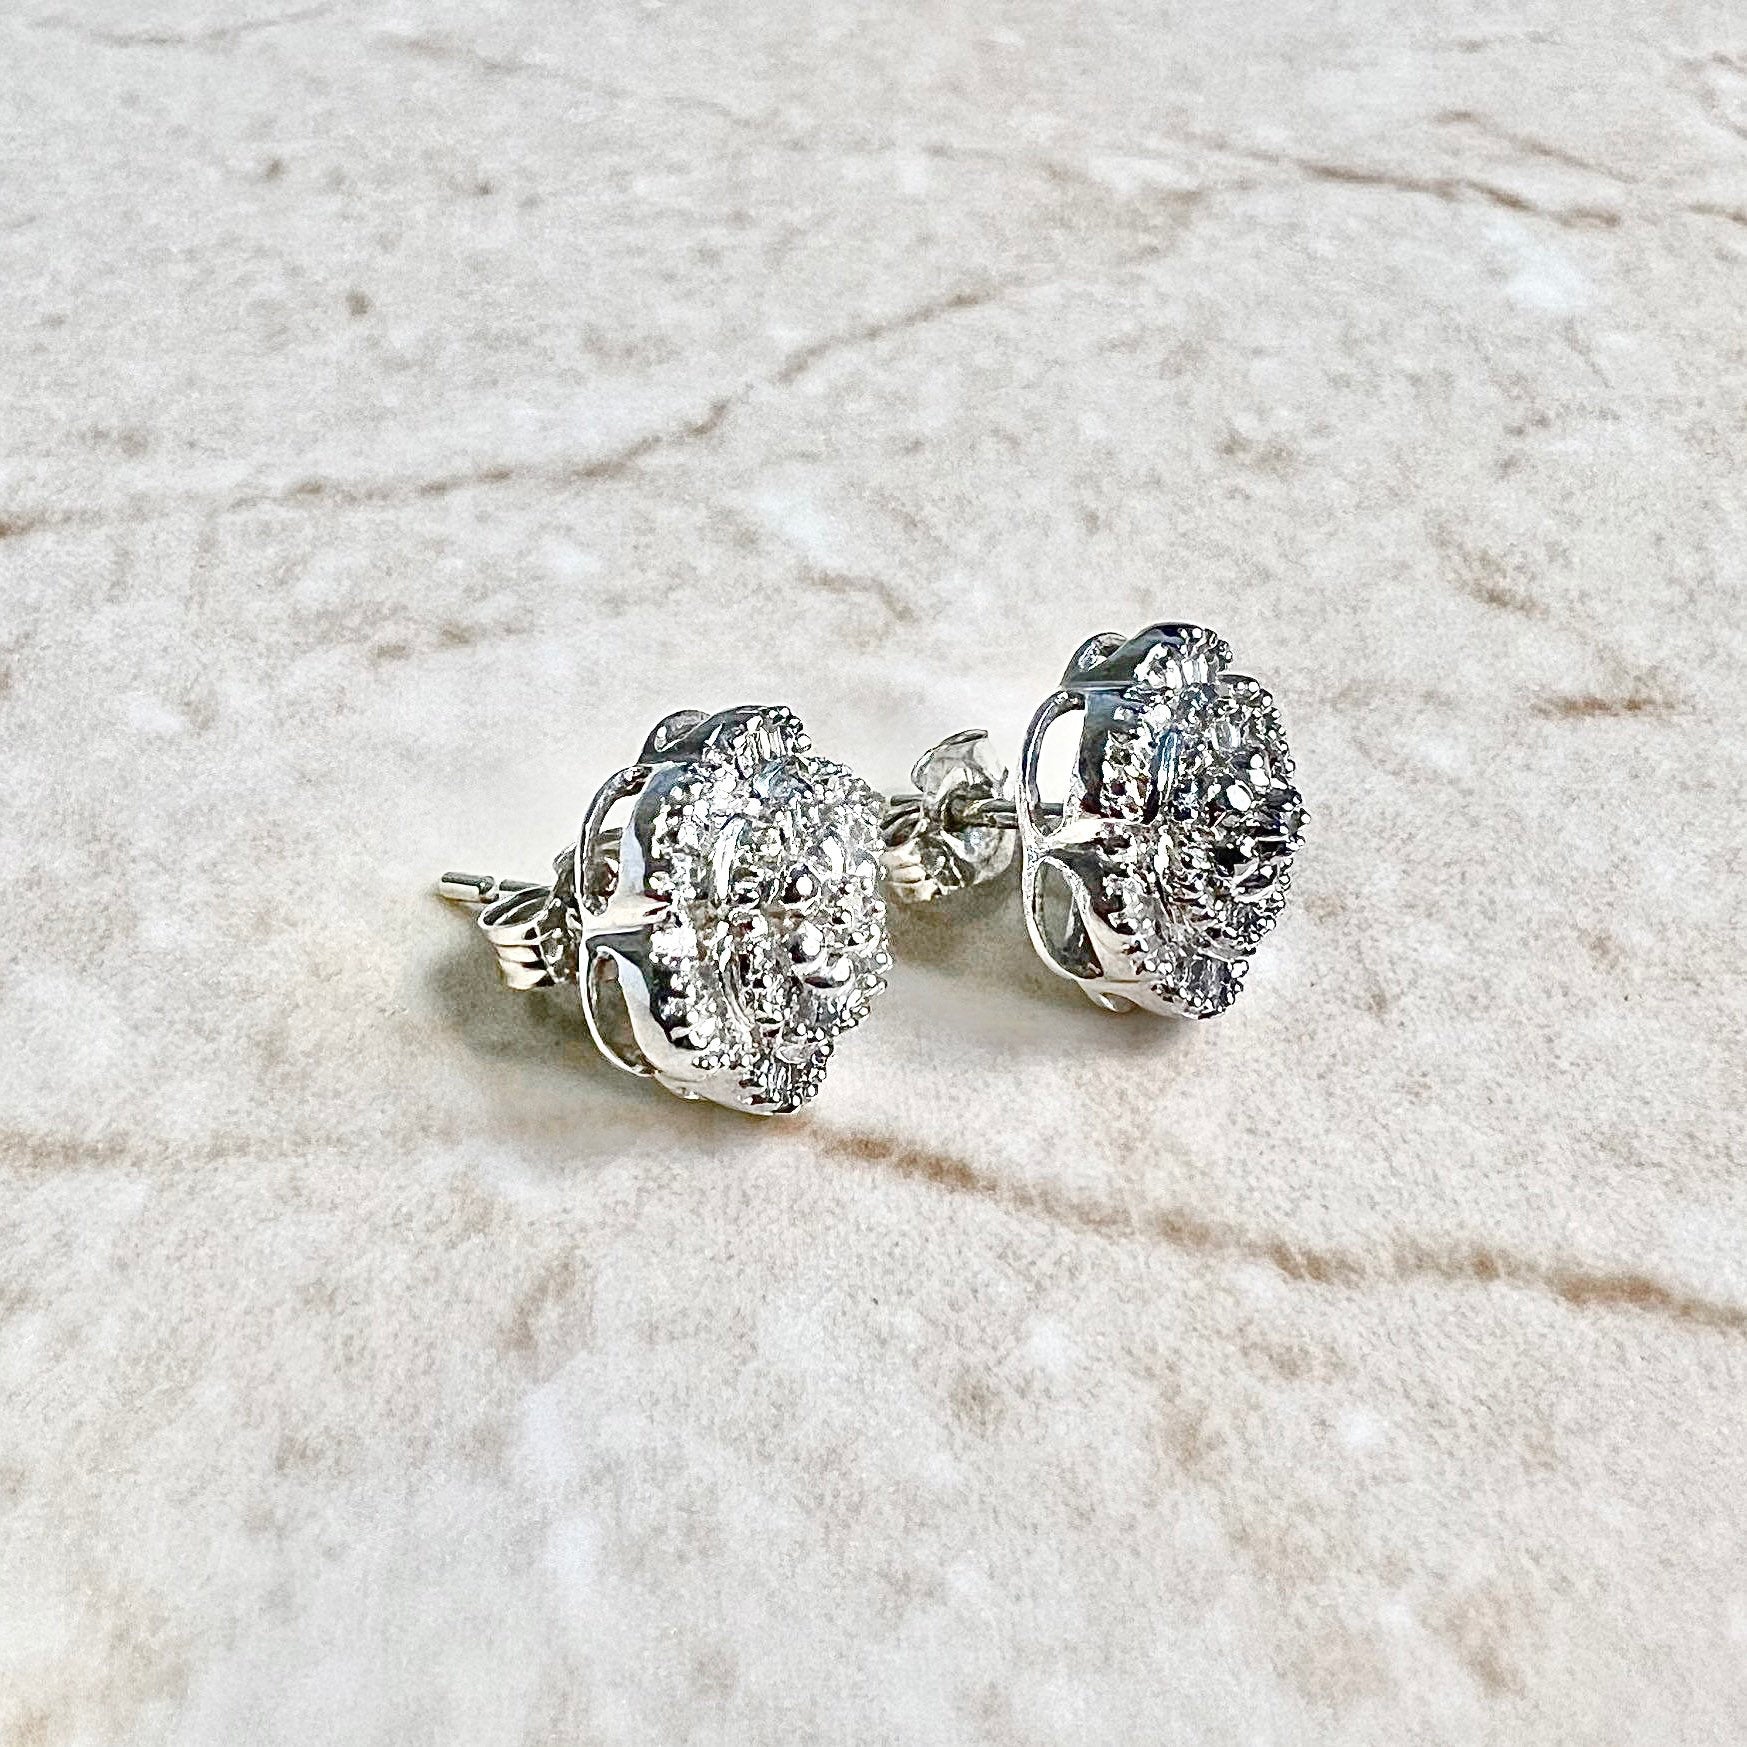 10K Diamond Cluster Stud Earrings 0.35 CTTW - 10K White Gold Diamond Studs - Diamond Halo Earrings - Anniversary Gift - Best Gifts For Her